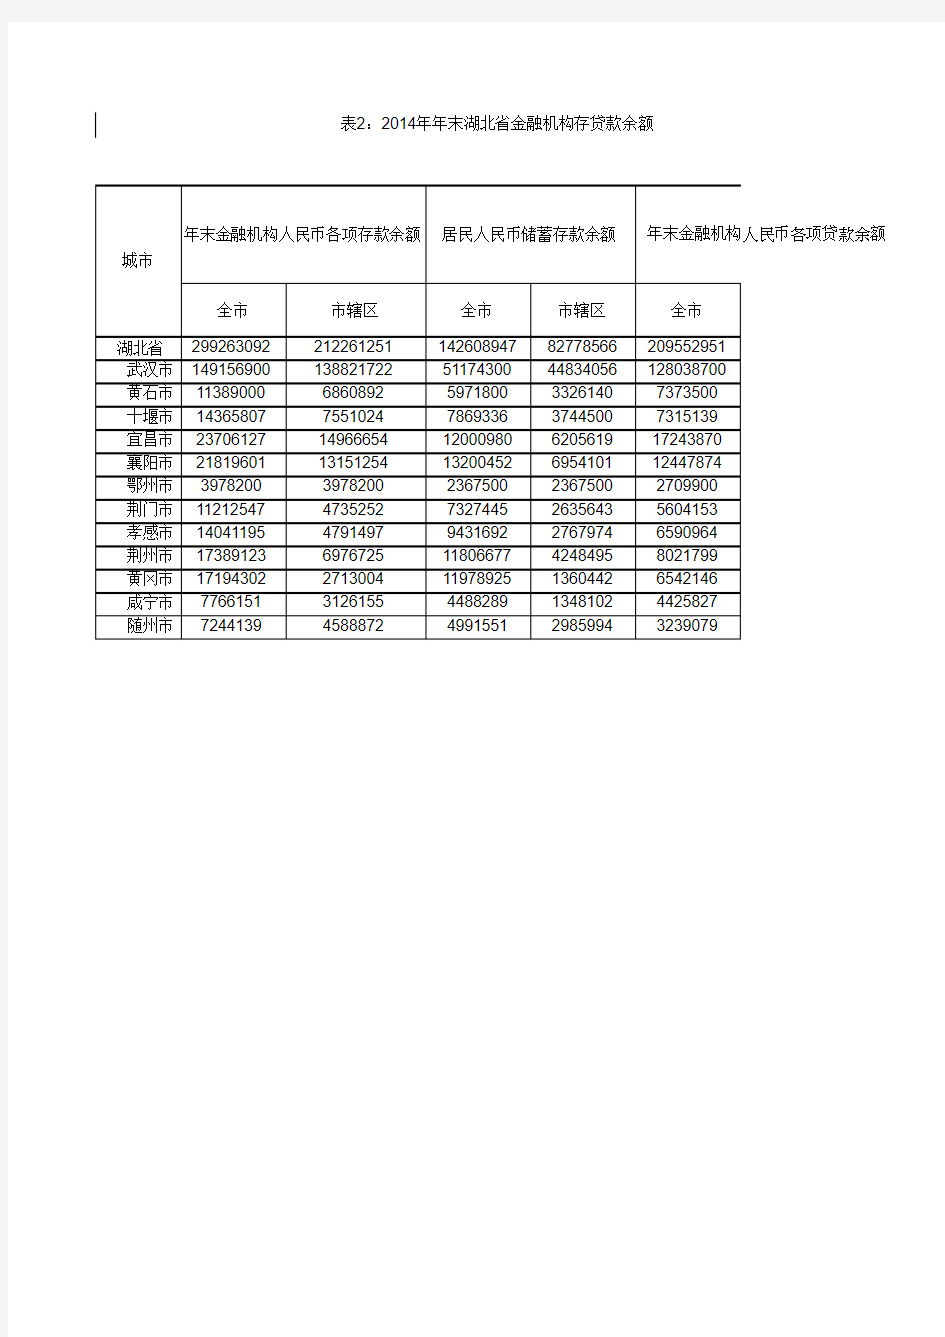 中国城市统计年鉴2014年末金融机构存贷款余额